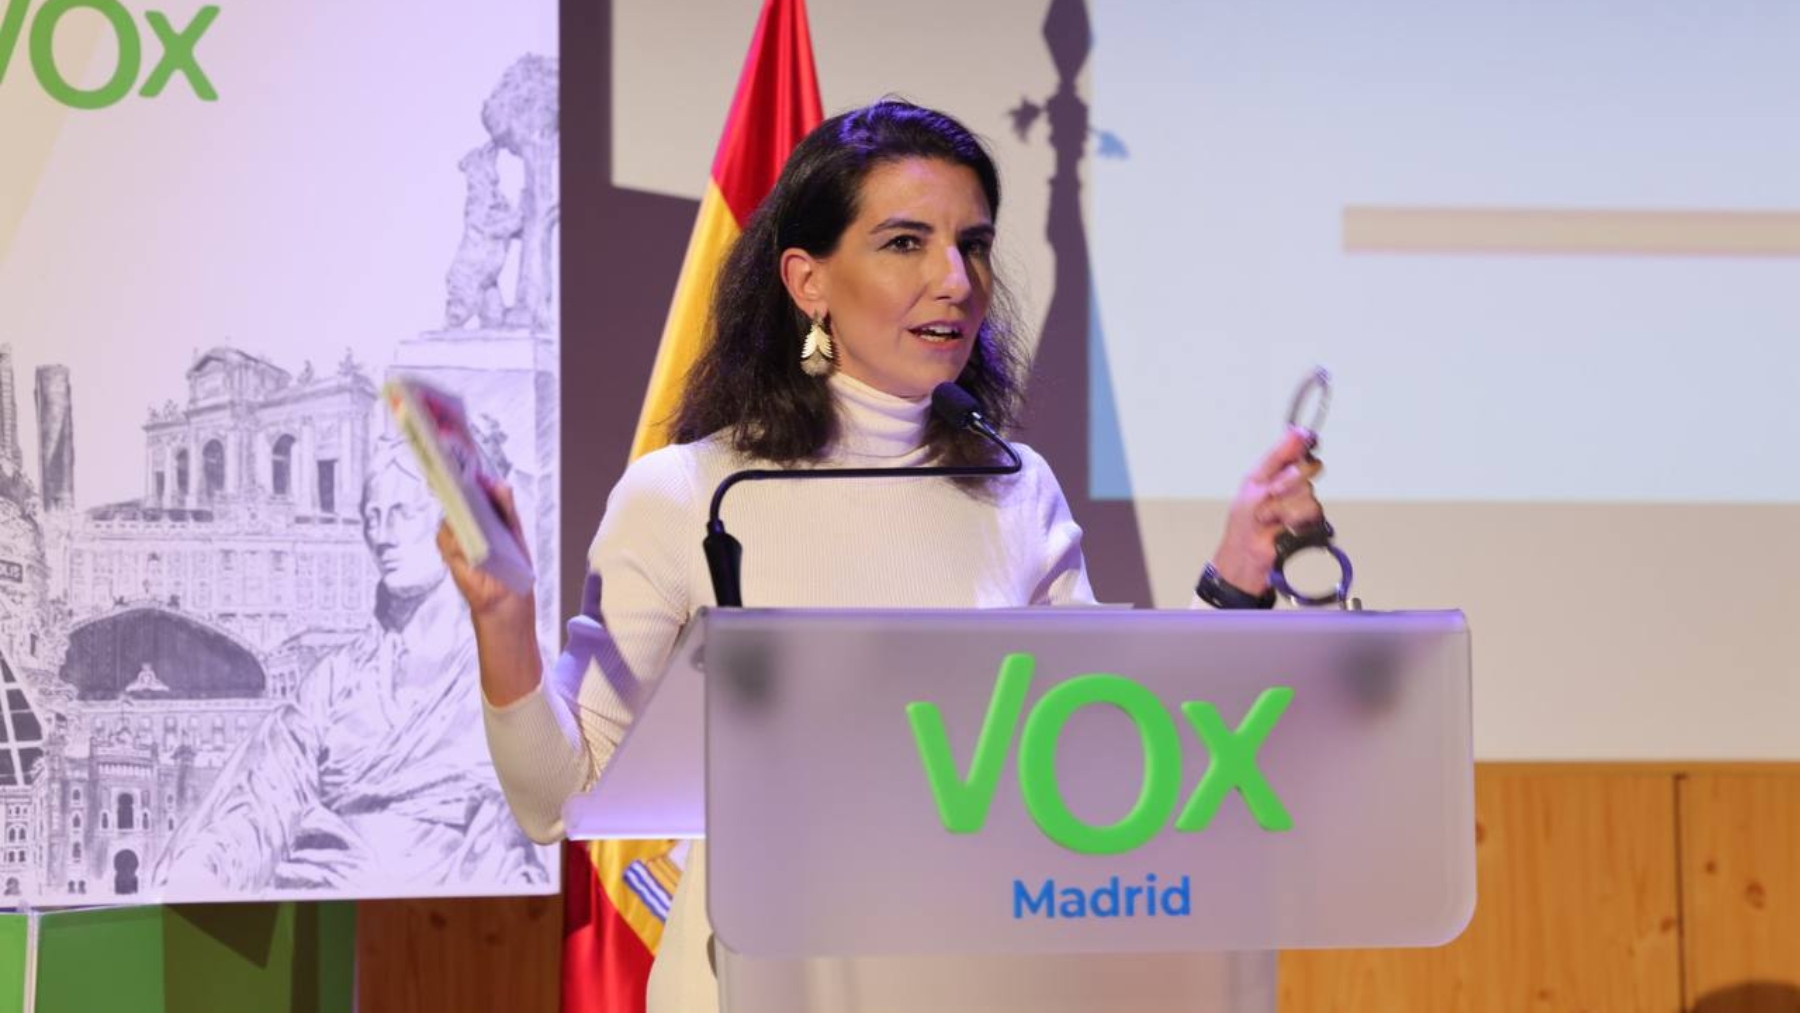 La presidenta de Vox Madrid, Rocío Monasterio